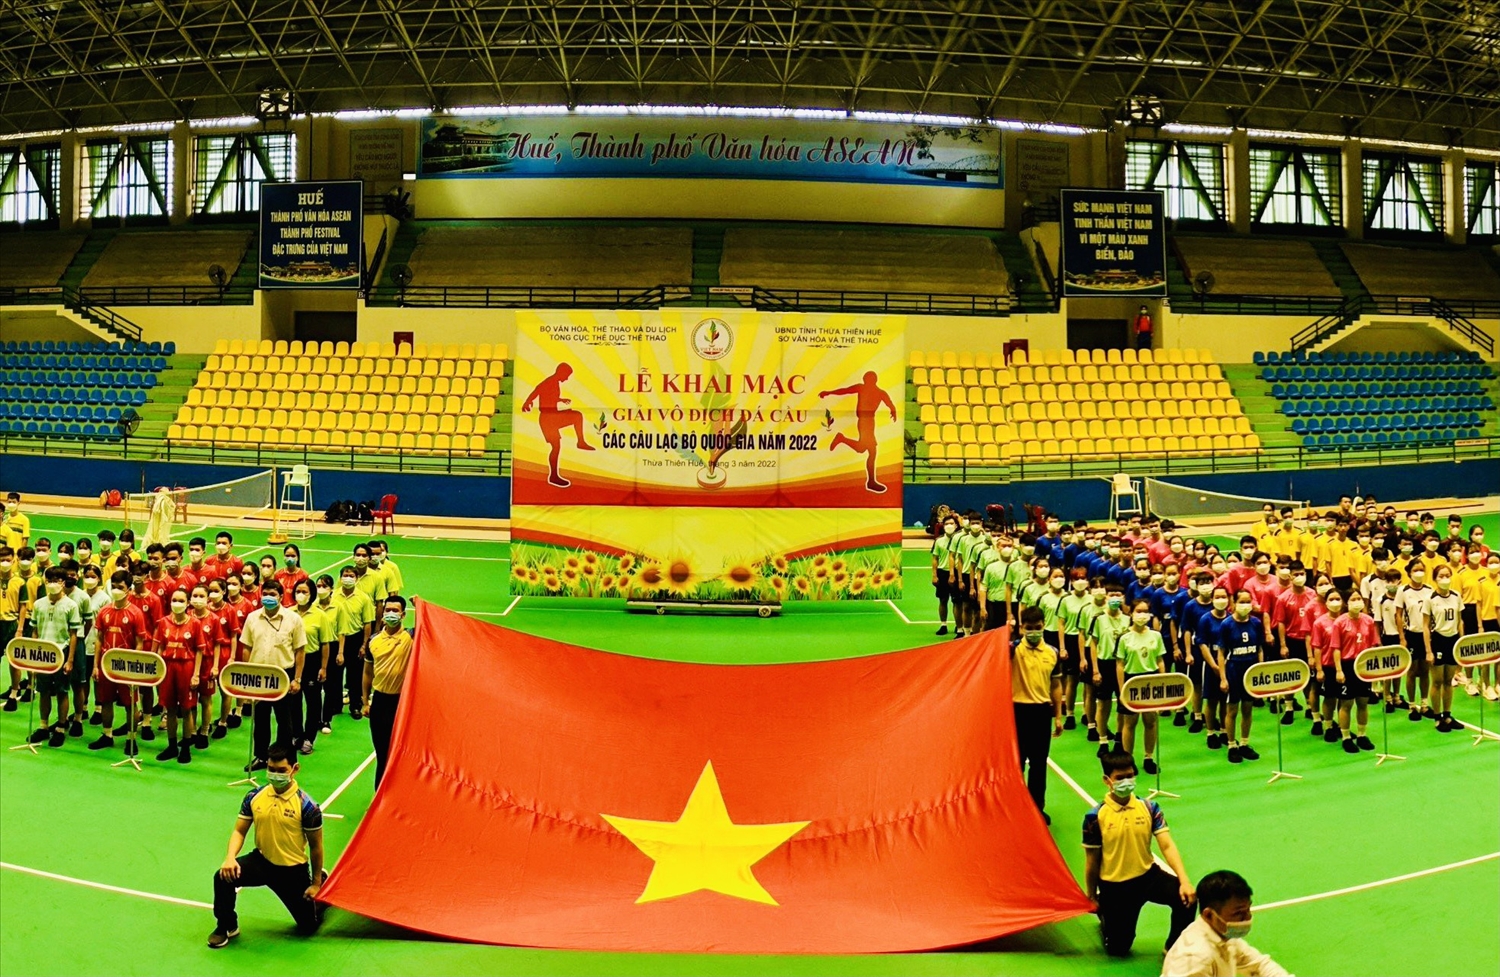 Lễ khai mạc Giải vô địch đá cầu các câu lạc bộ quốc gia năm 2022 (ảnh: svhtt.thuathienhue.gov.vn)